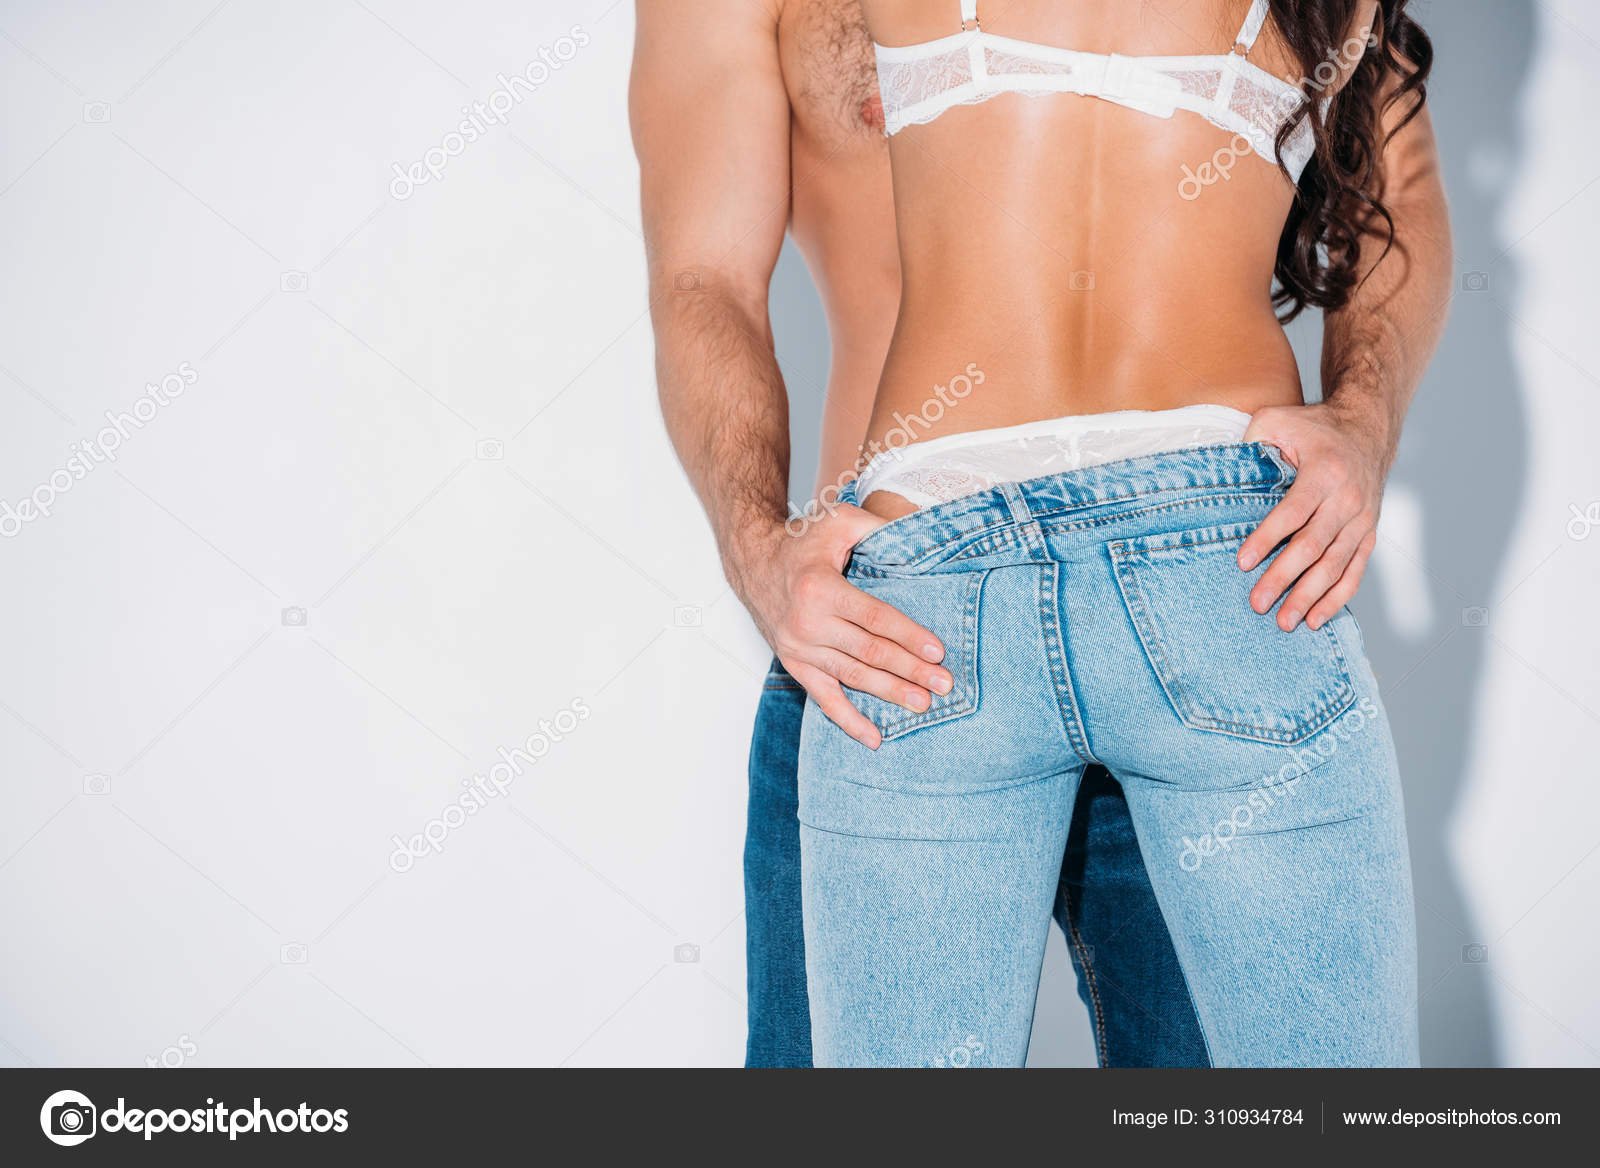 Эротика фото - девушка снимает джинсы